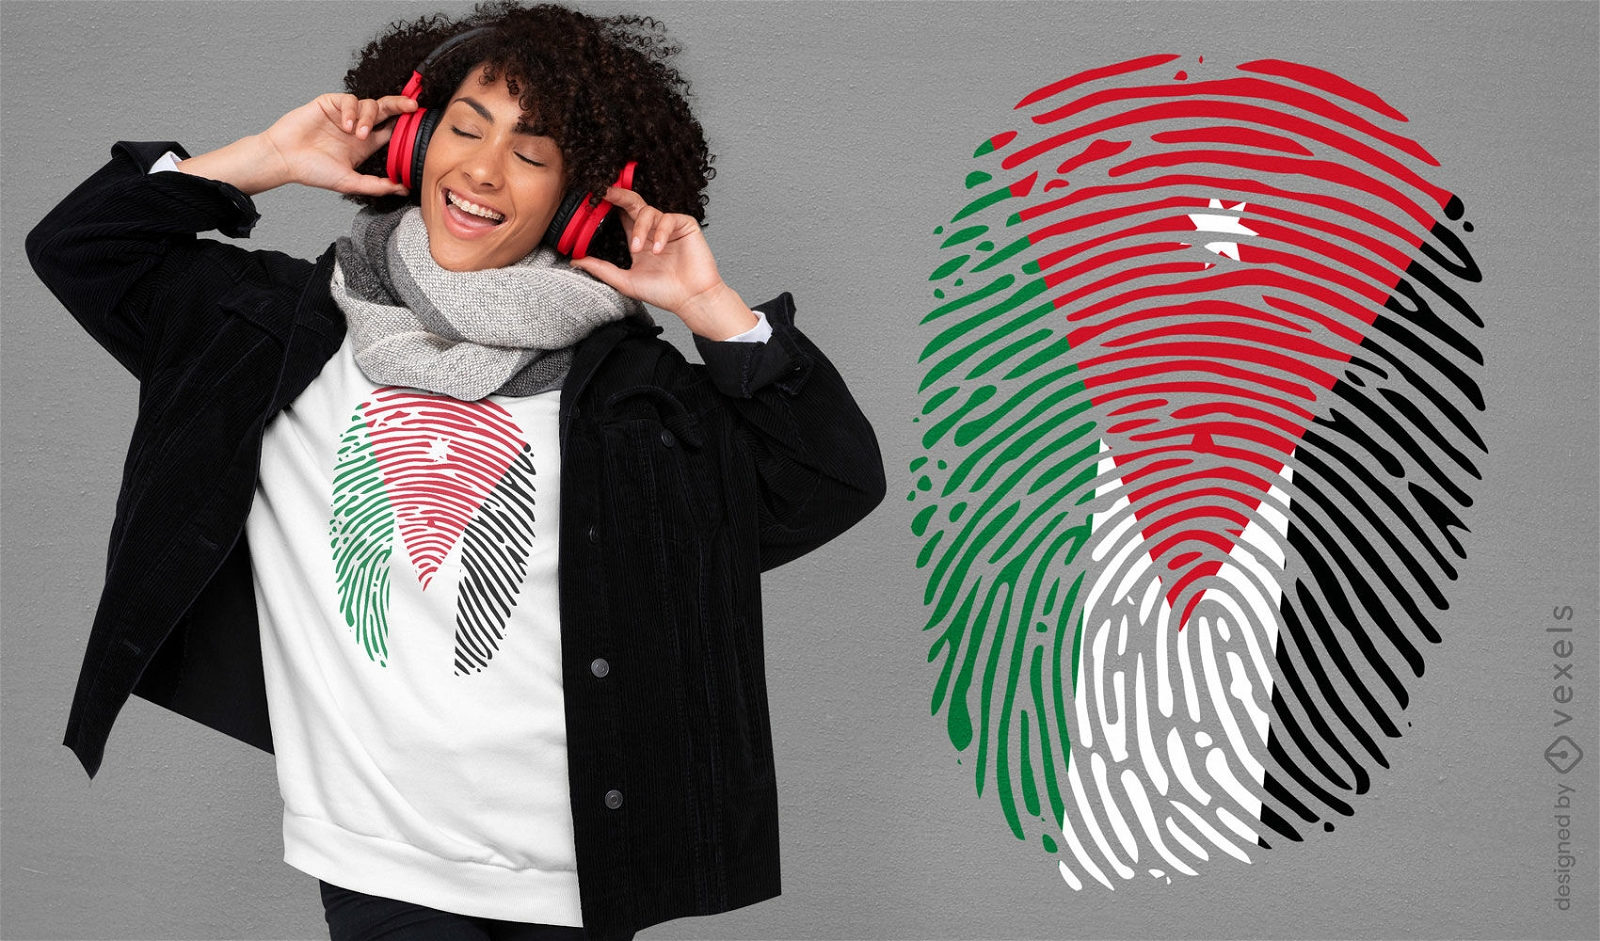 Jordan fingerprint flag t-shirt design